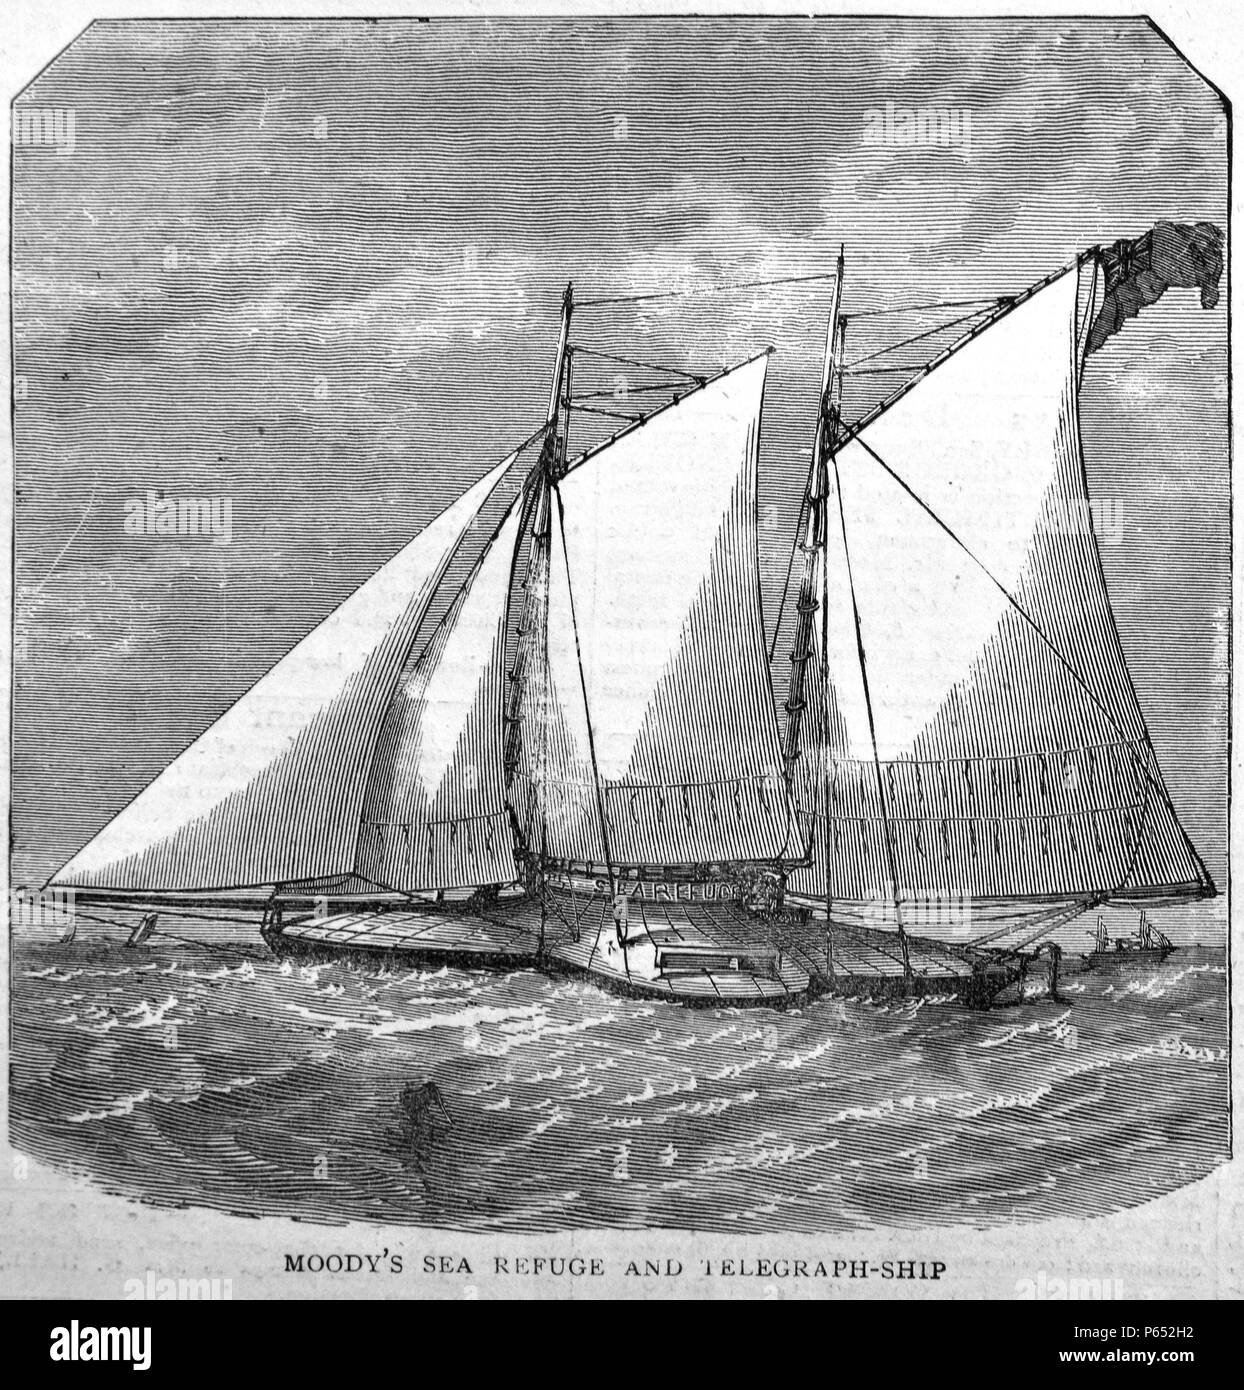 Incisione intitolato "oody Mare del rifugio e telegrafo nave". Datata 1870 Foto Stock